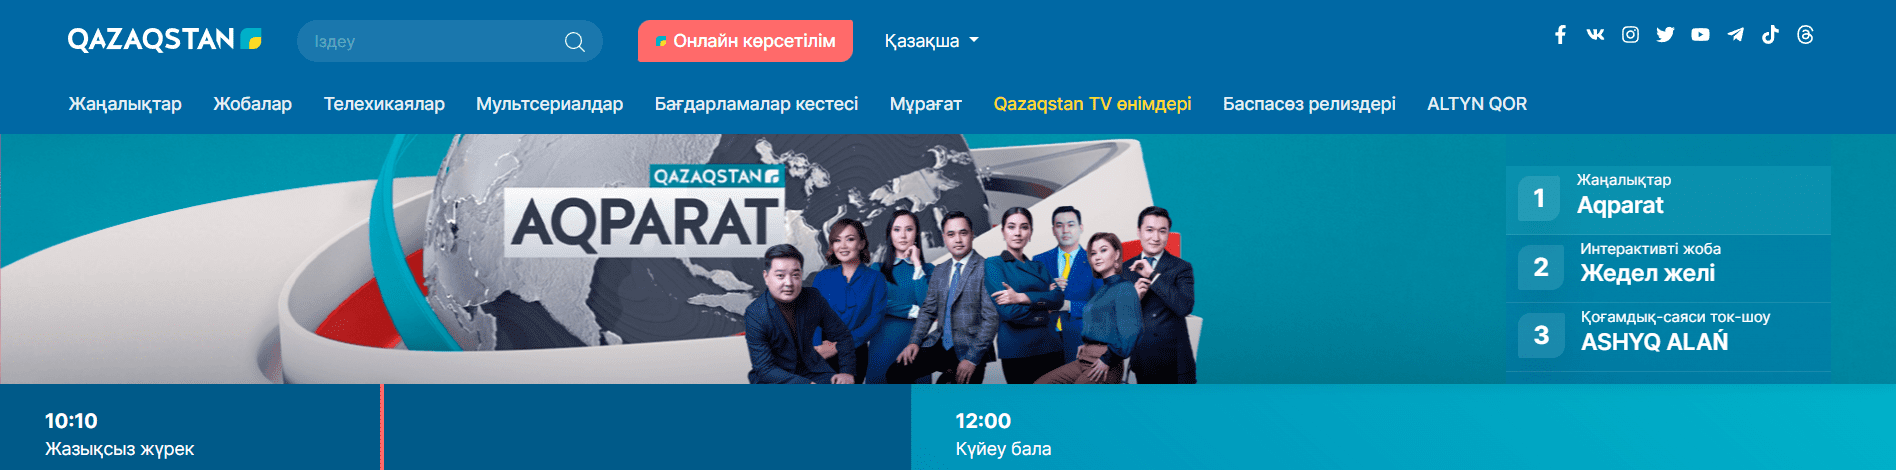 Республиканская телерадиокорпорация "Казахстан" (qazaqstan.tv) - официальный сайт